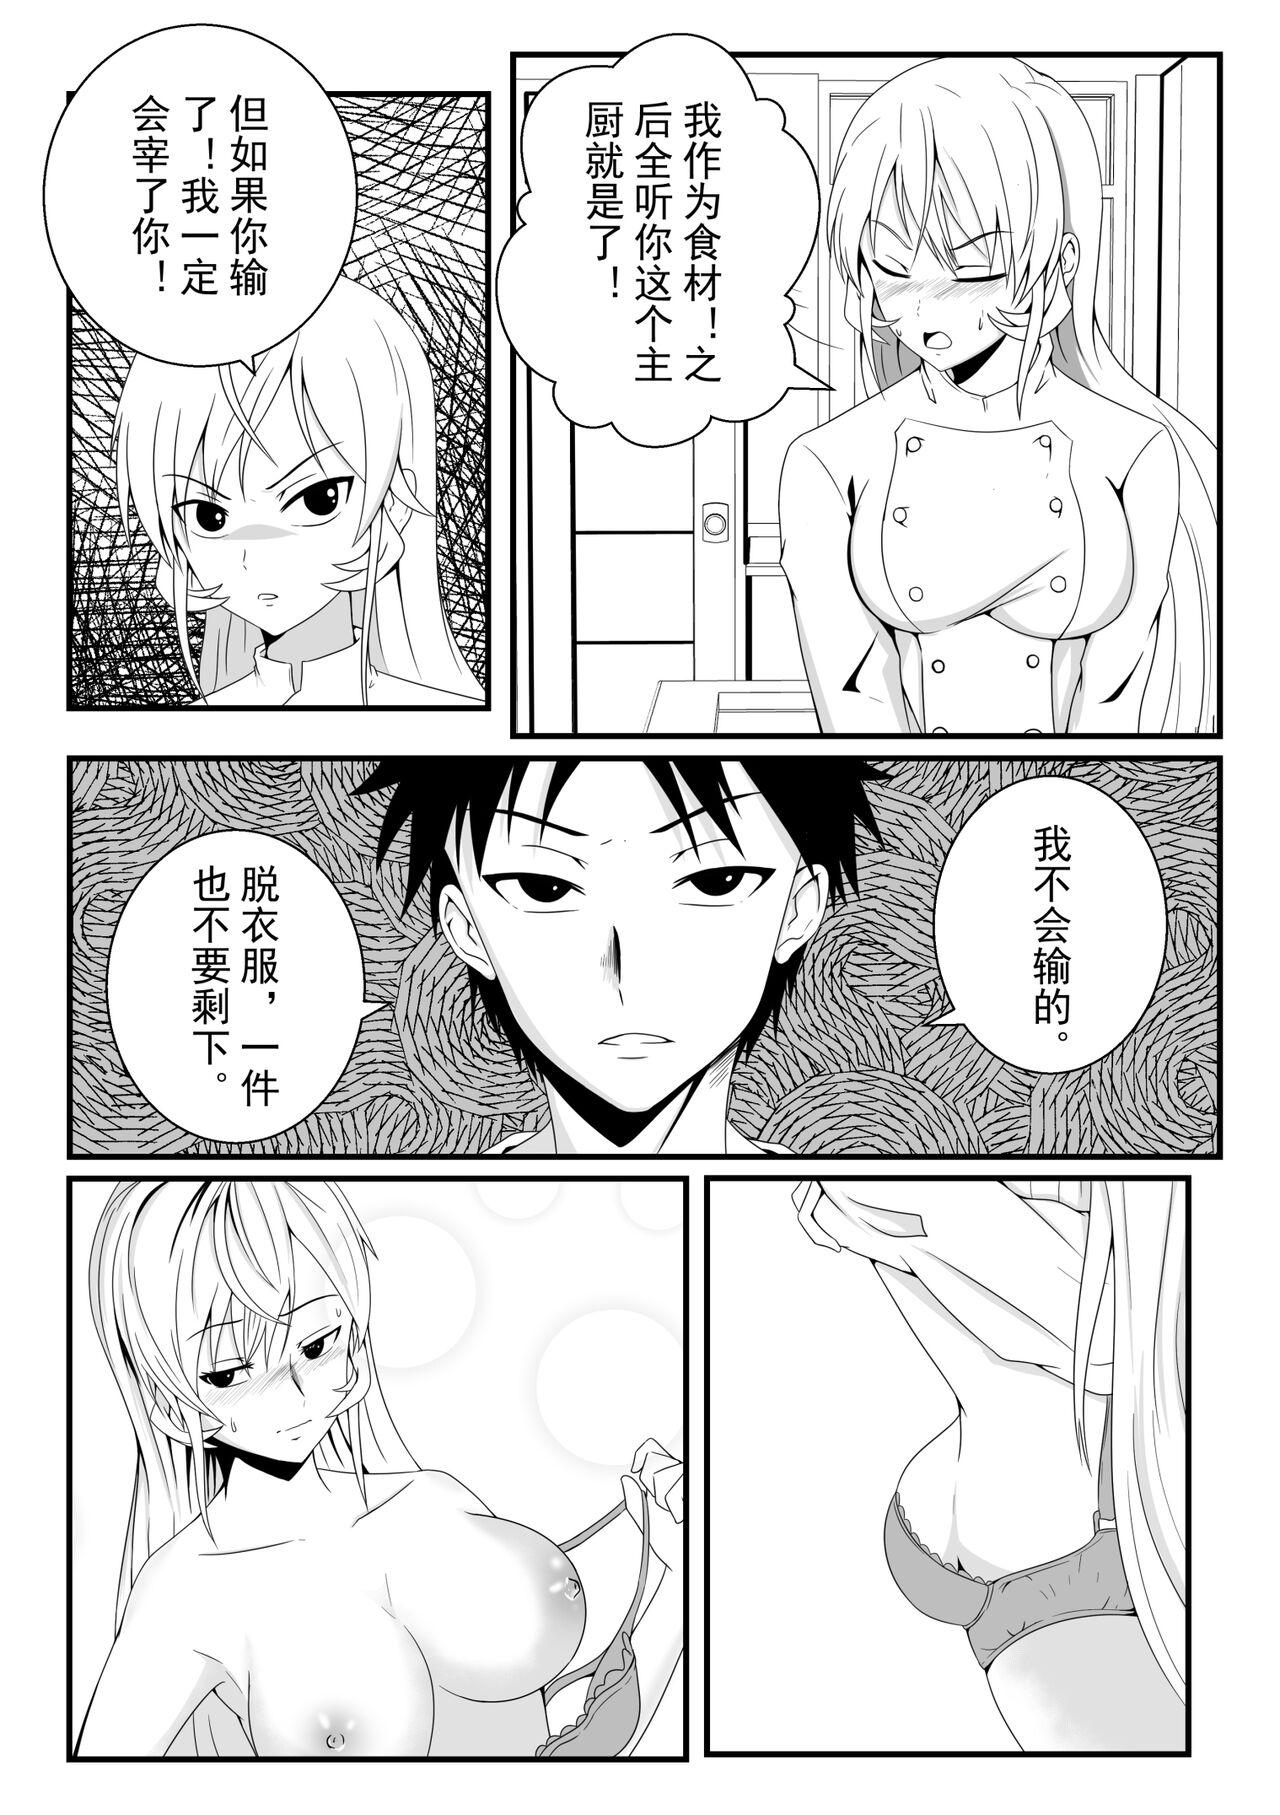 Full Movie 食戟之灵 - Shokugeki no soma Free Hardcore Porn - Page 8